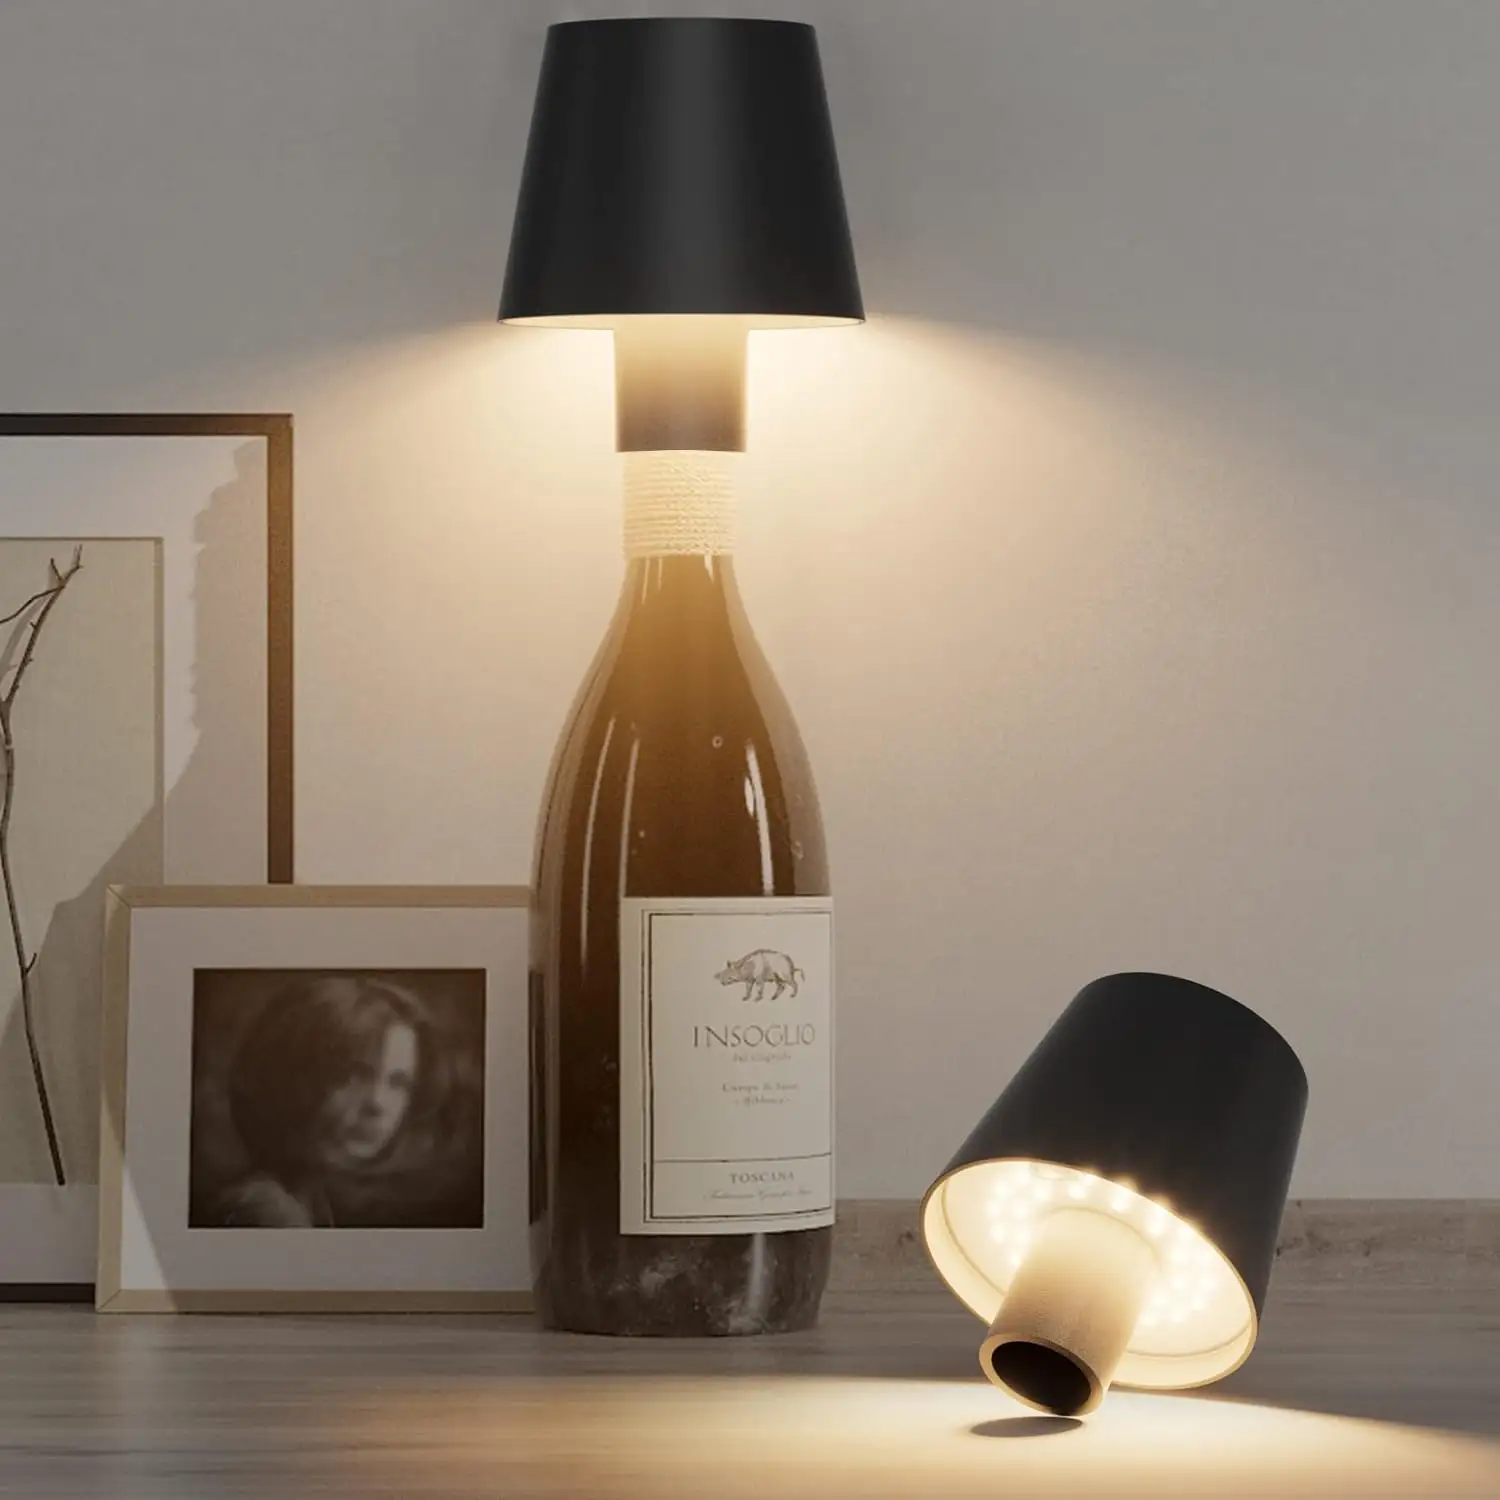 Lampu meja dioperasikan bertenaga baterai tanpa kabel, lampu LED botol anggur meja sentuh Modern dapat disesuaikan tahan air IP54